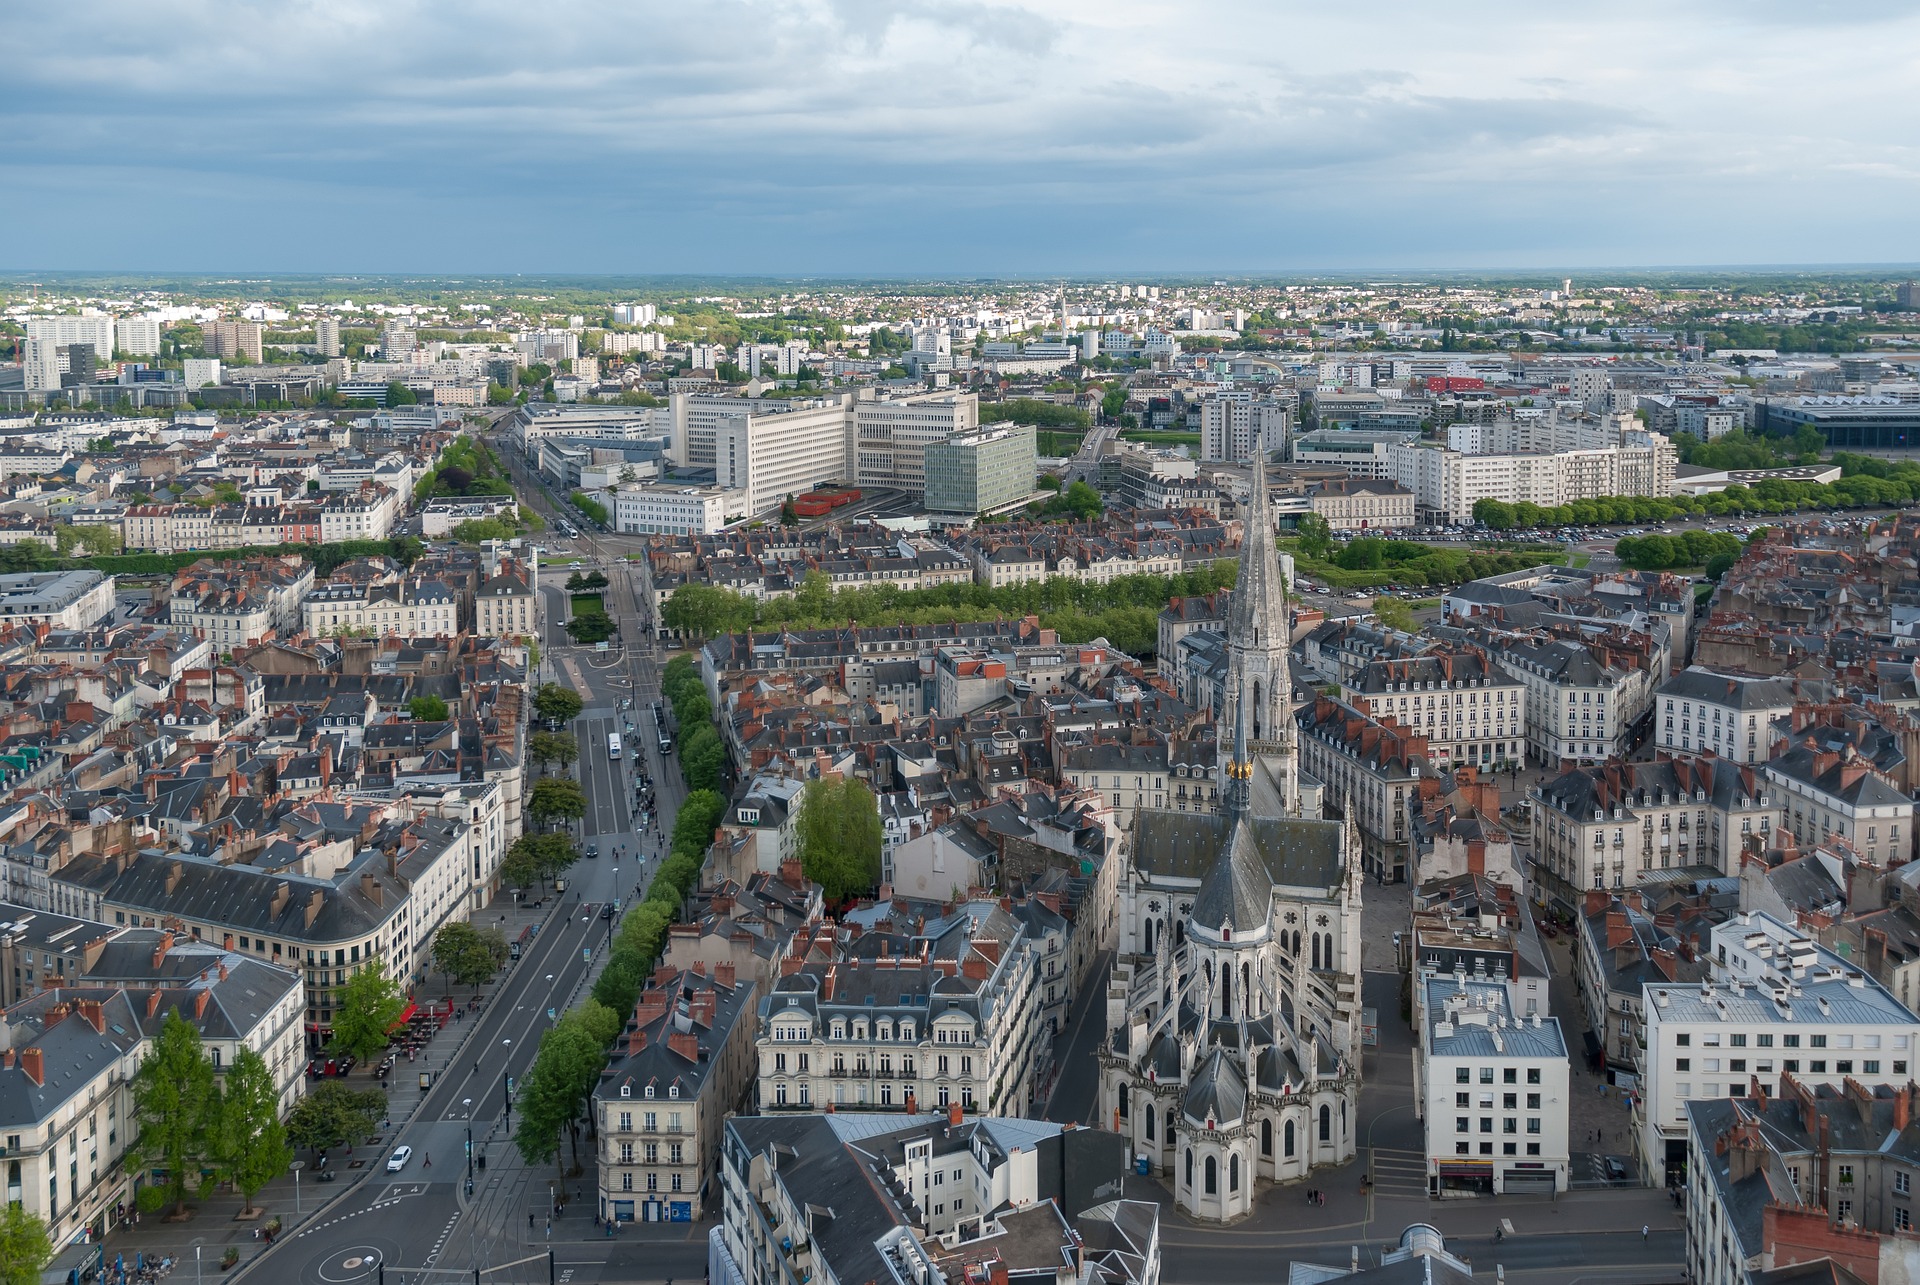 Blick aus der Luft auf Nantes. Bild: pixabay/barskefranck